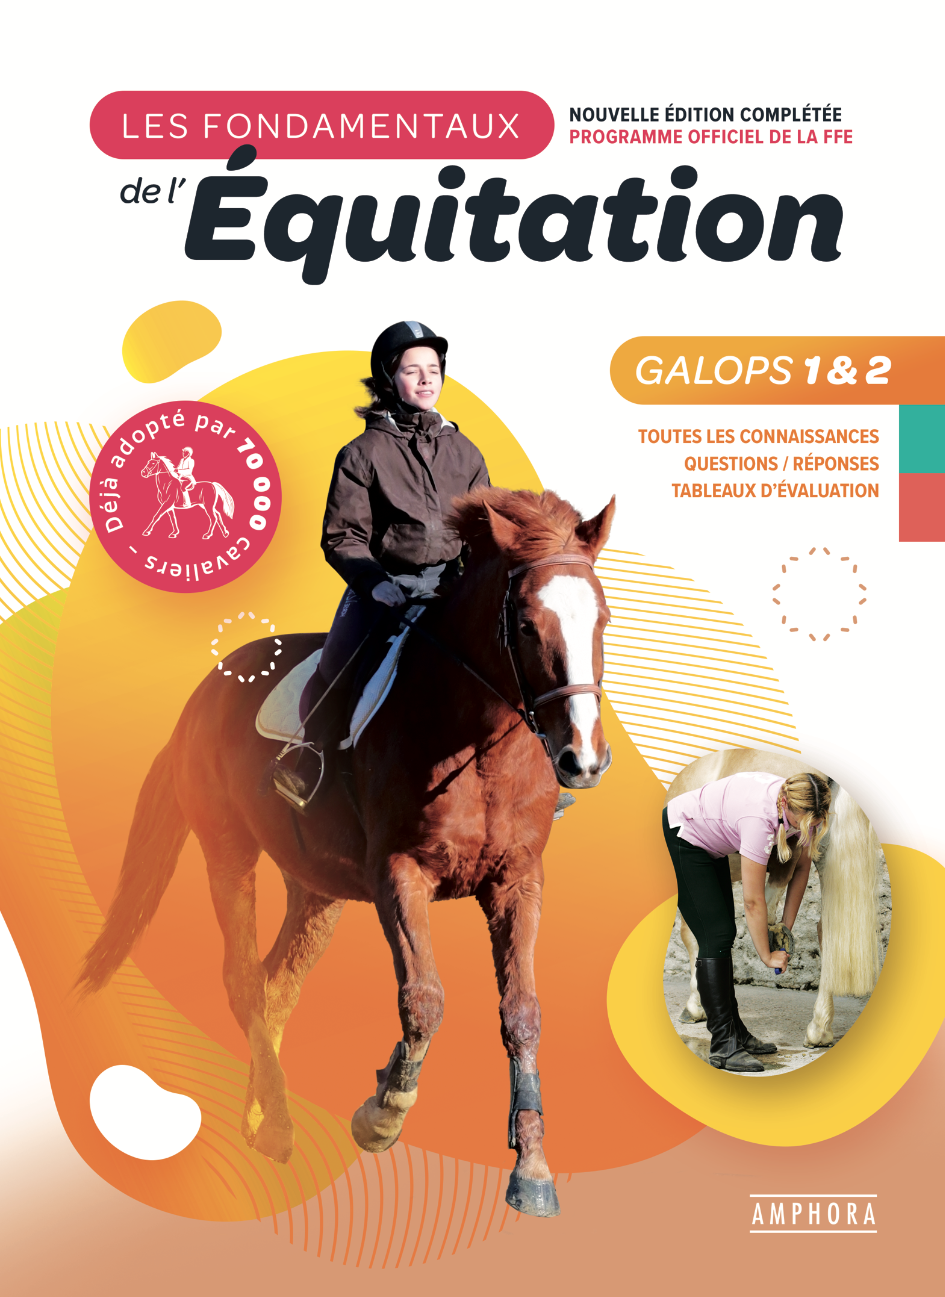 galop 2 - Équitation  Cheval, Galop 2, Galop